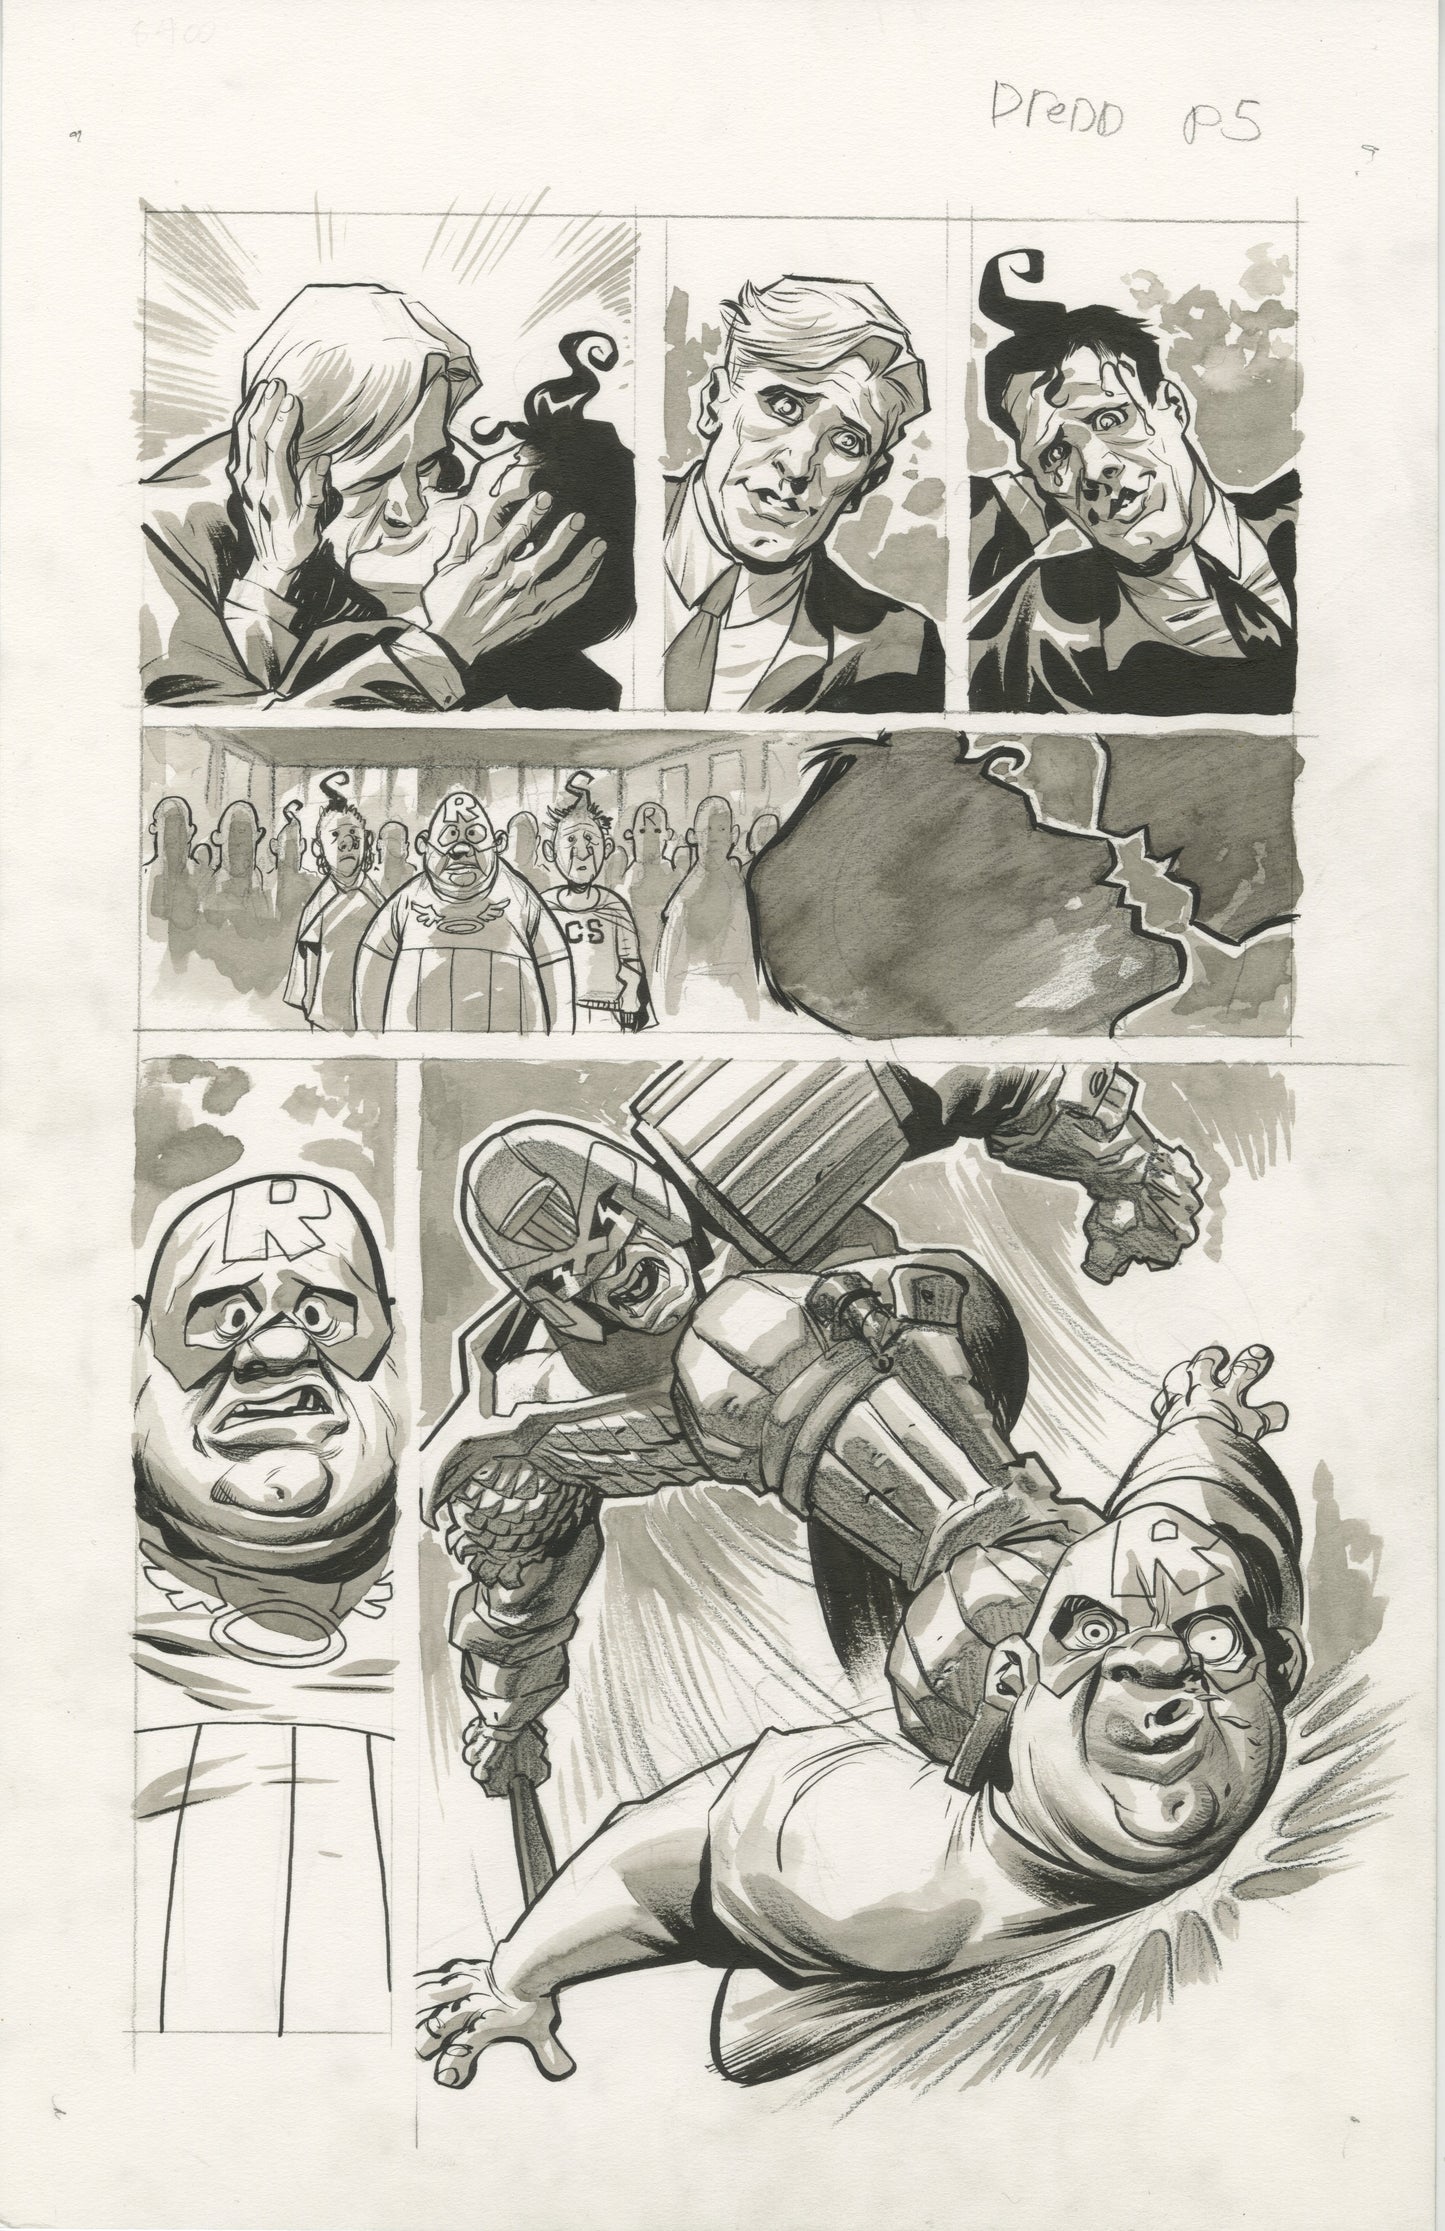 2000 AD / Judge Dredd: Free Comic Book Day, Page #5 (2016)